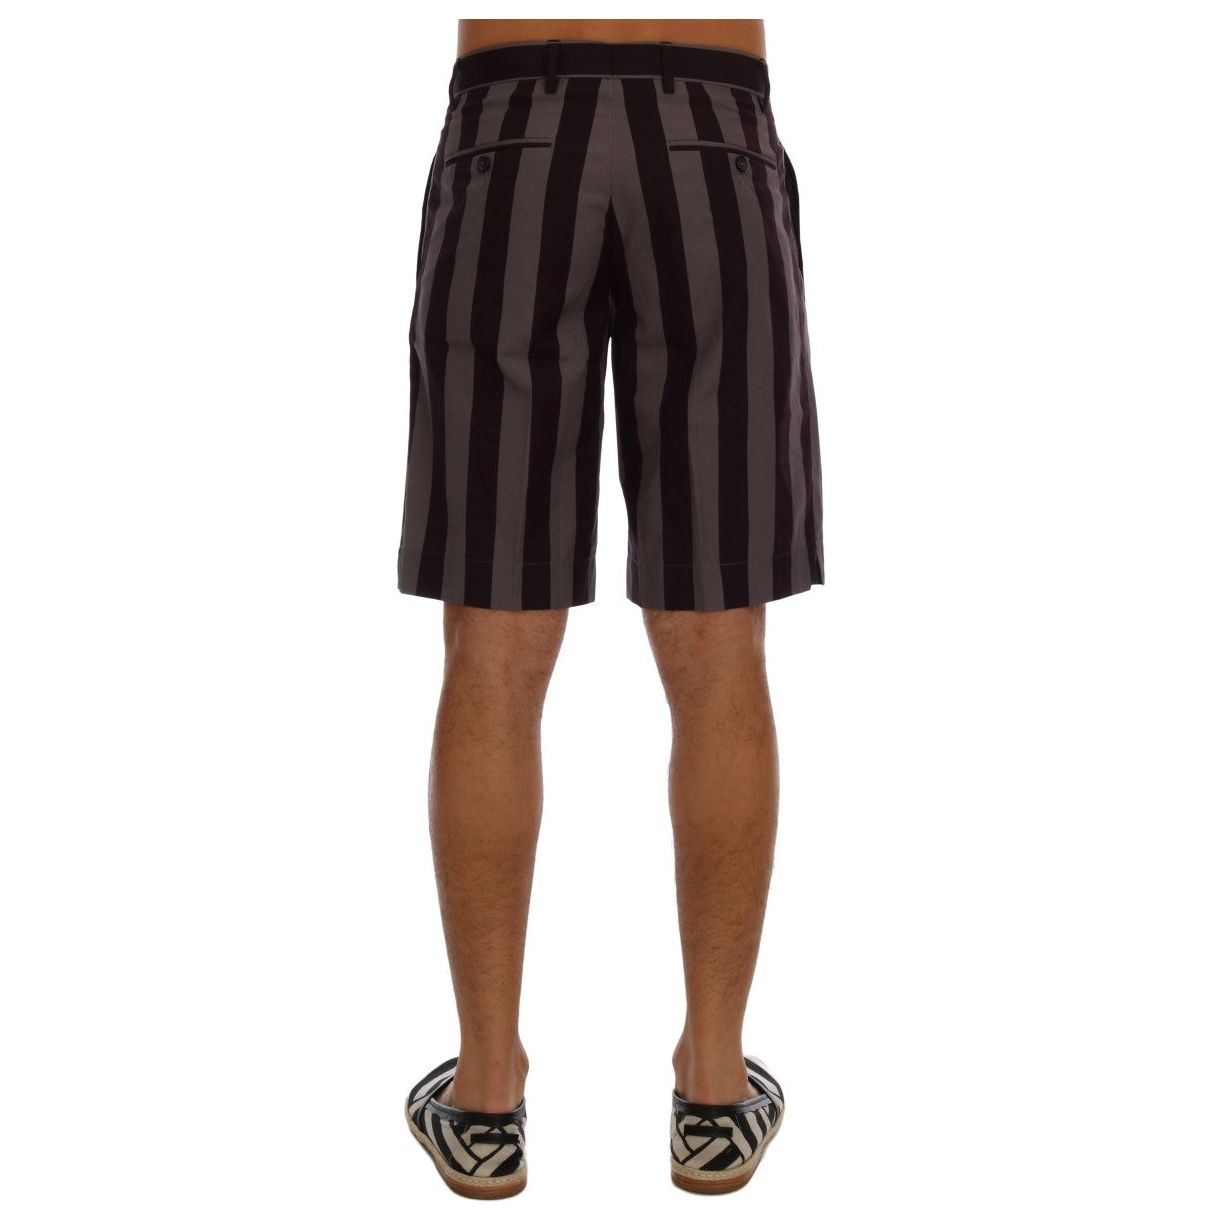 Dolce & Gabbana Casual Striped Cotton Shorts gray-purple-striped-cotton-shorts